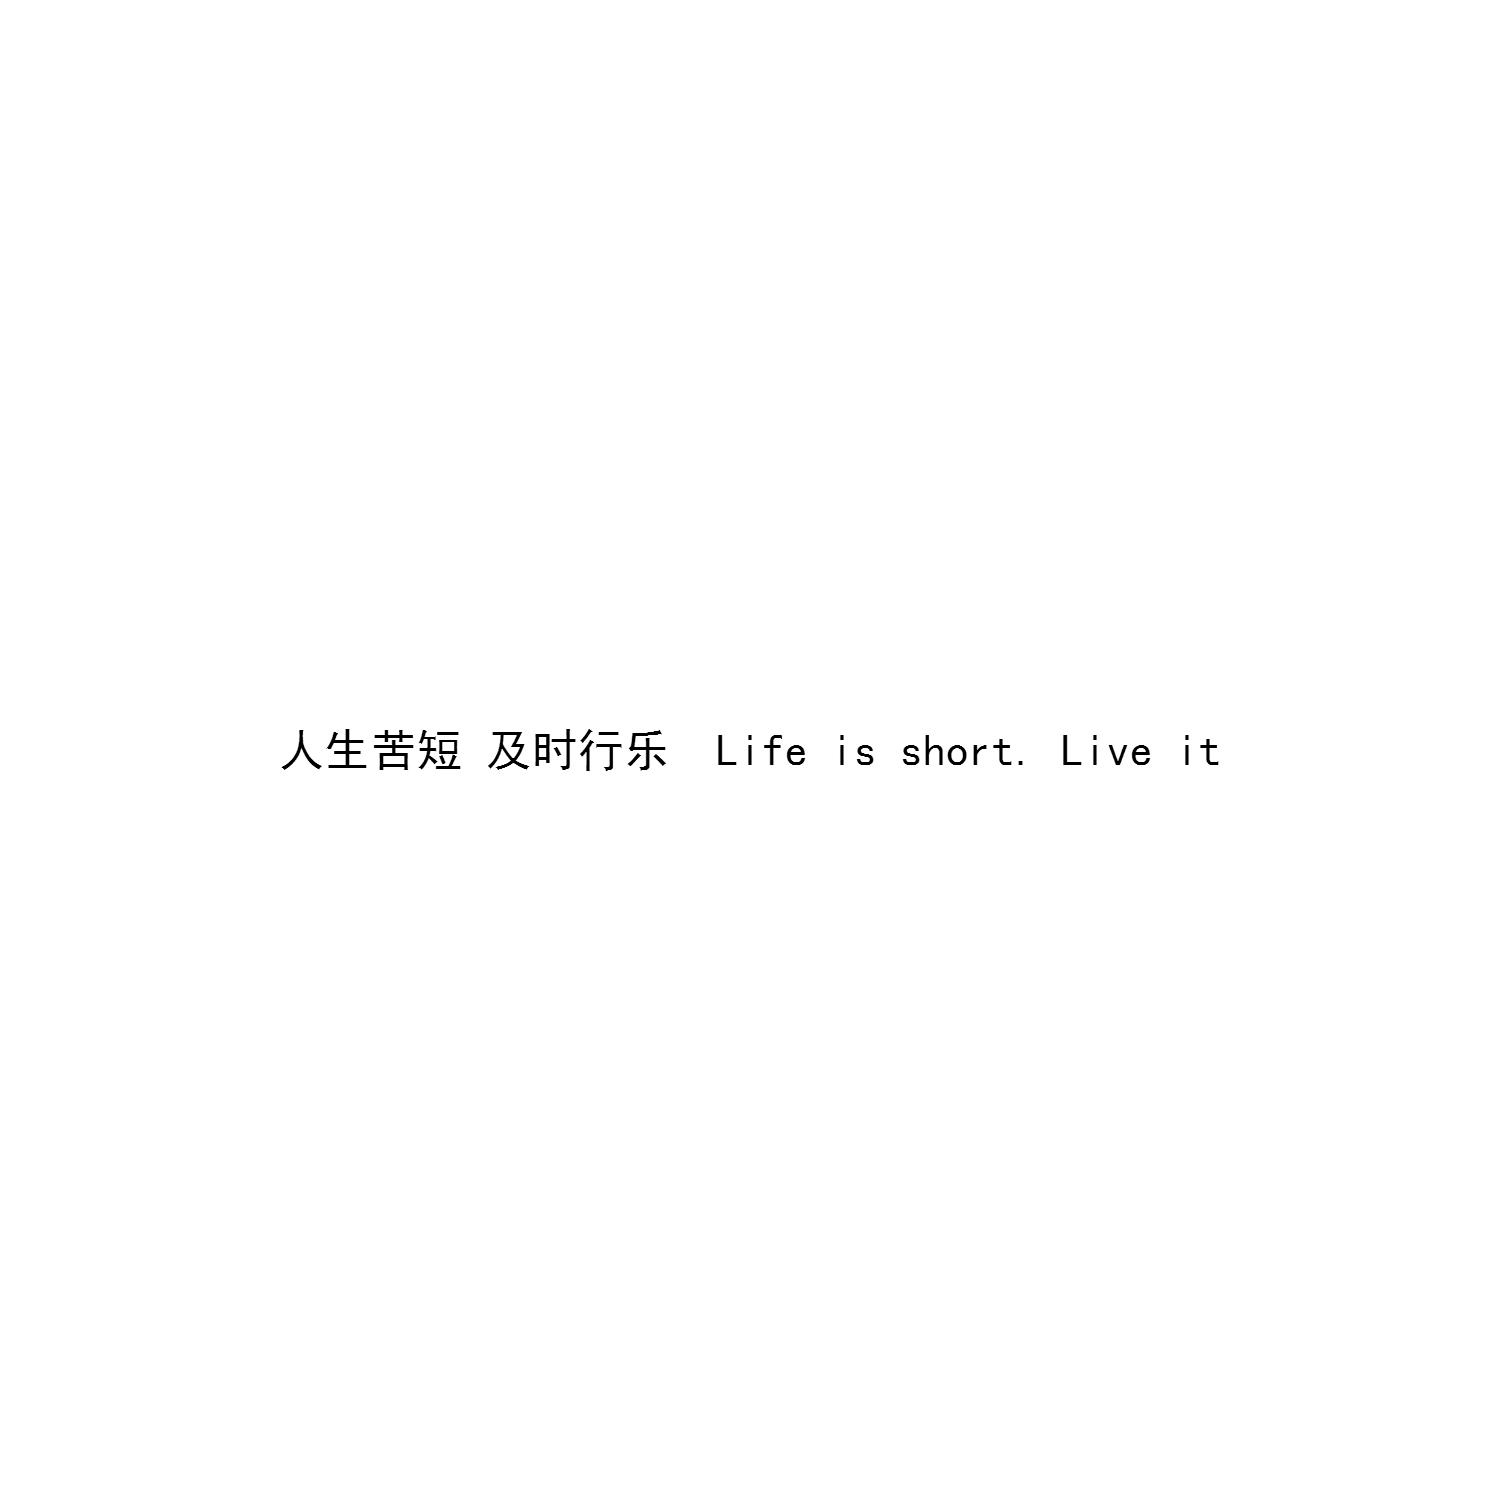 人生苦短及时行乐 life is short.live it